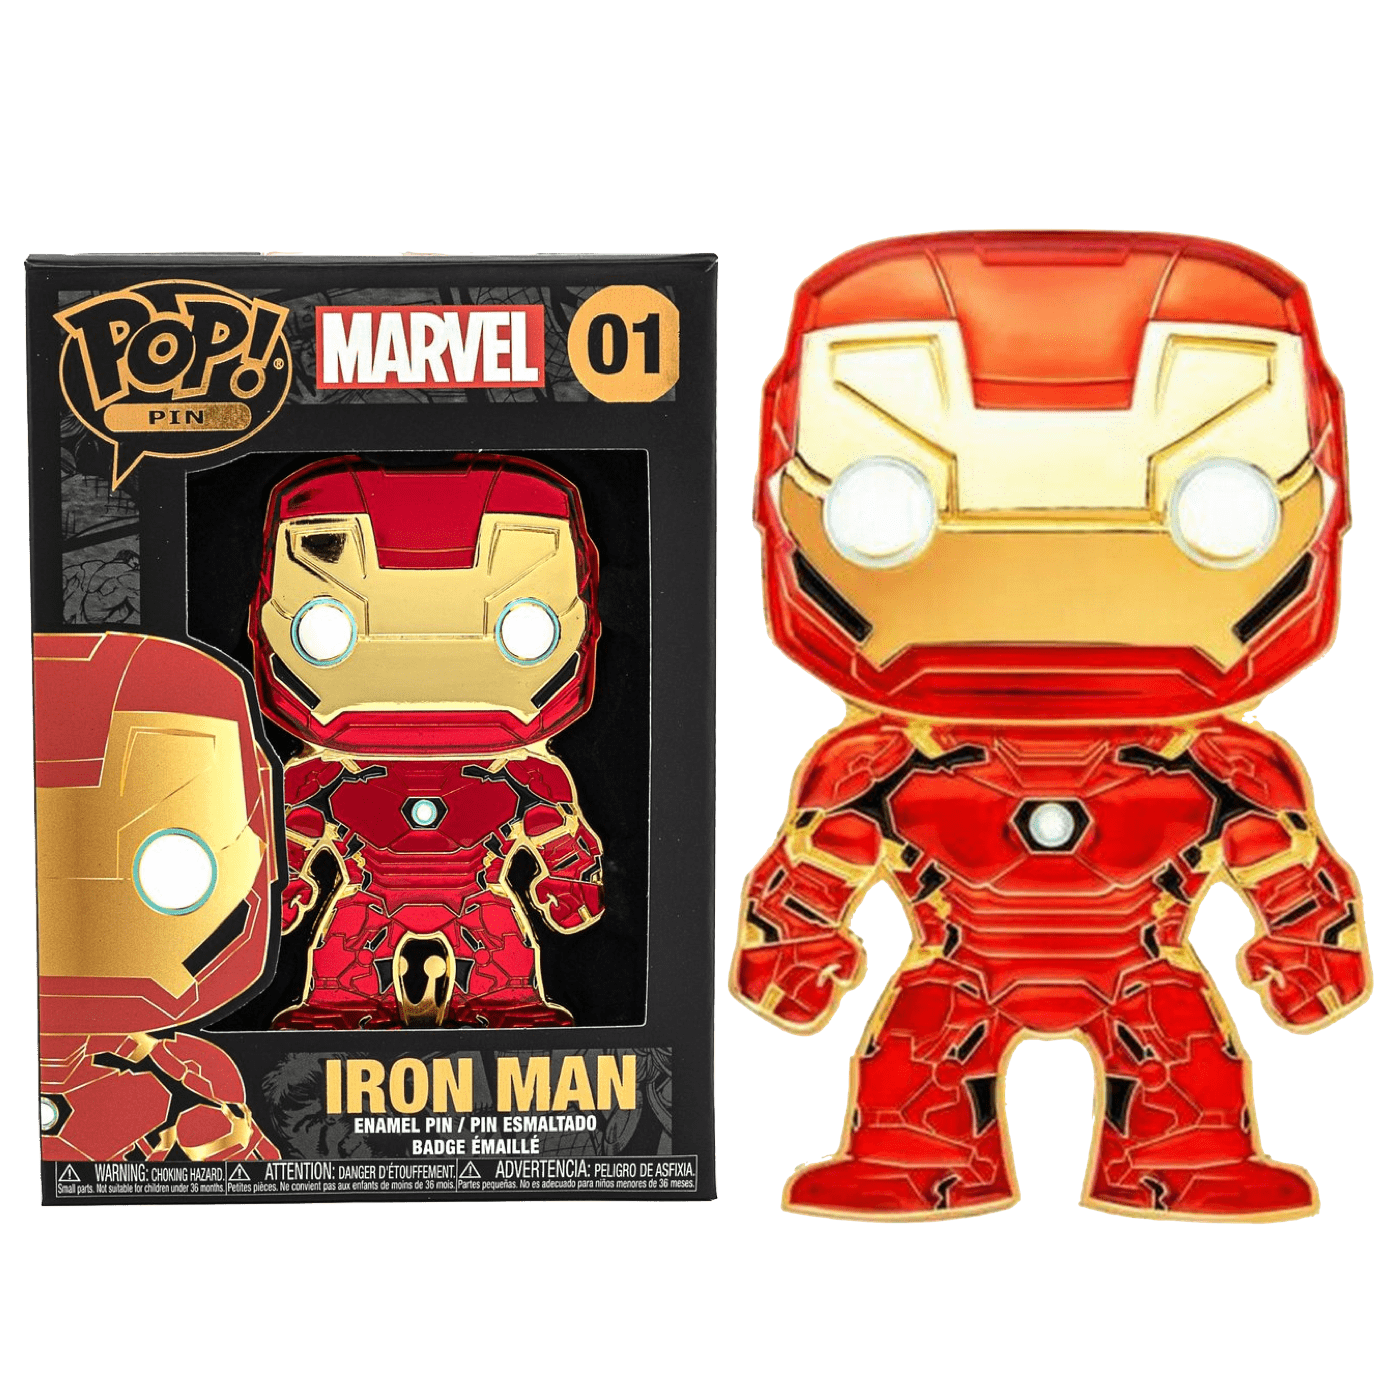 Man 4 iron Marvel Is